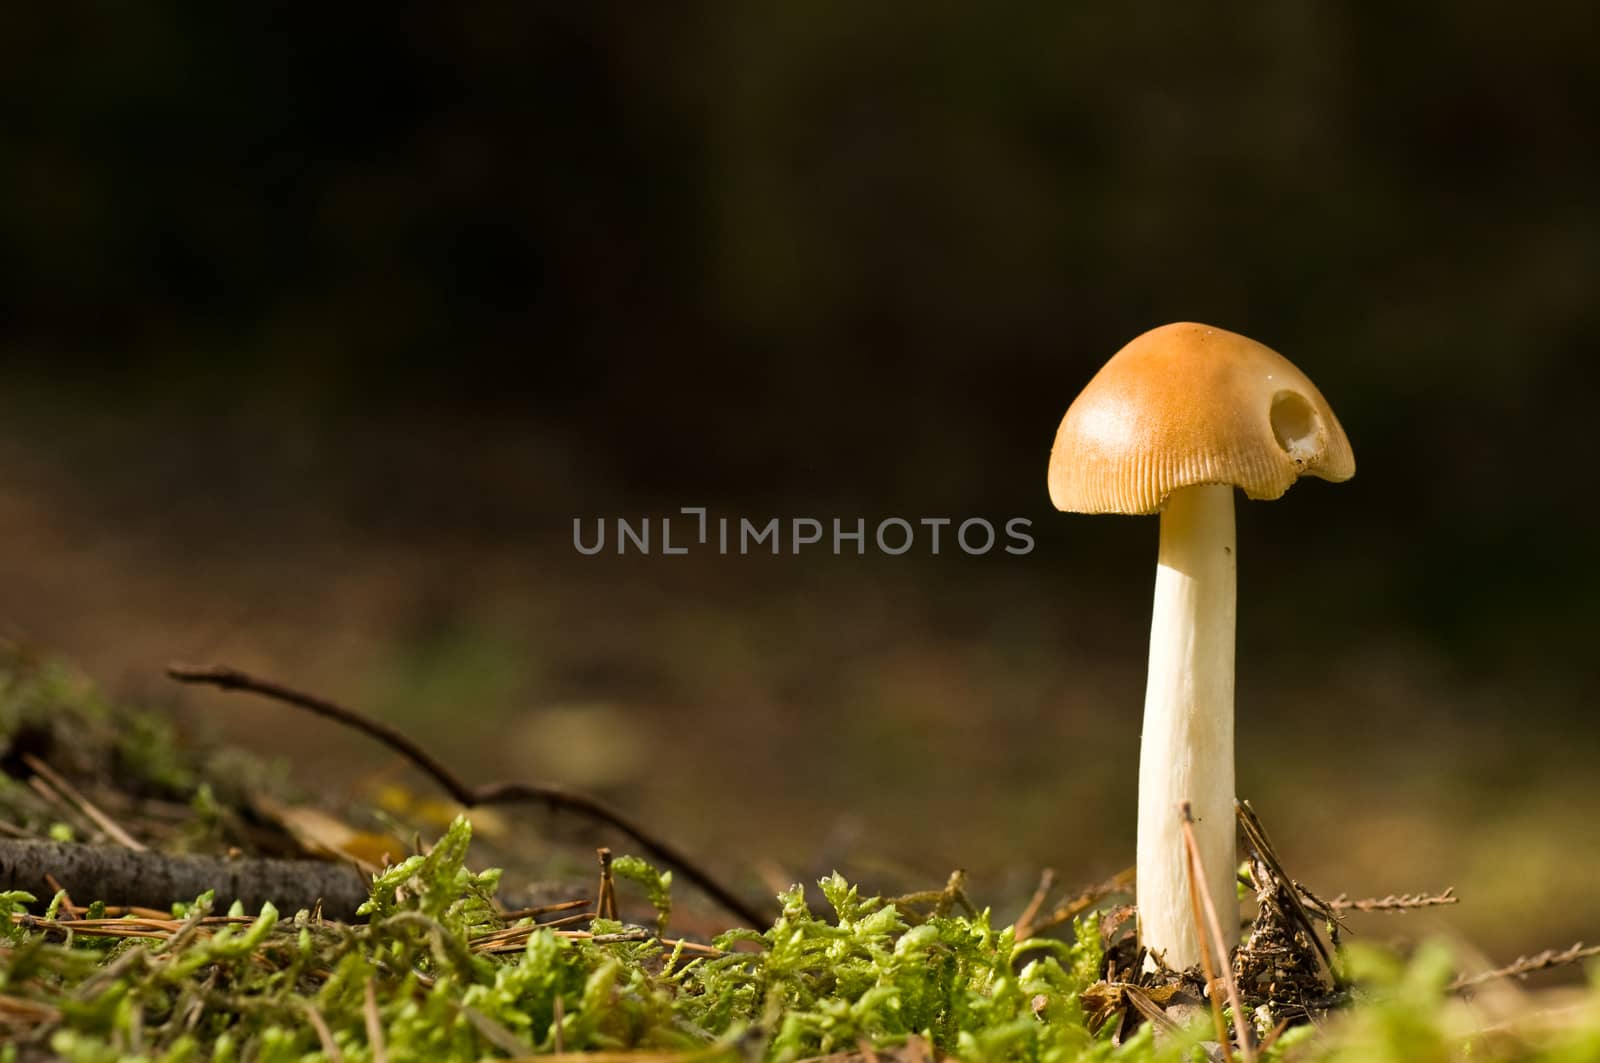 mushroom -Amanita -  in forest closeup